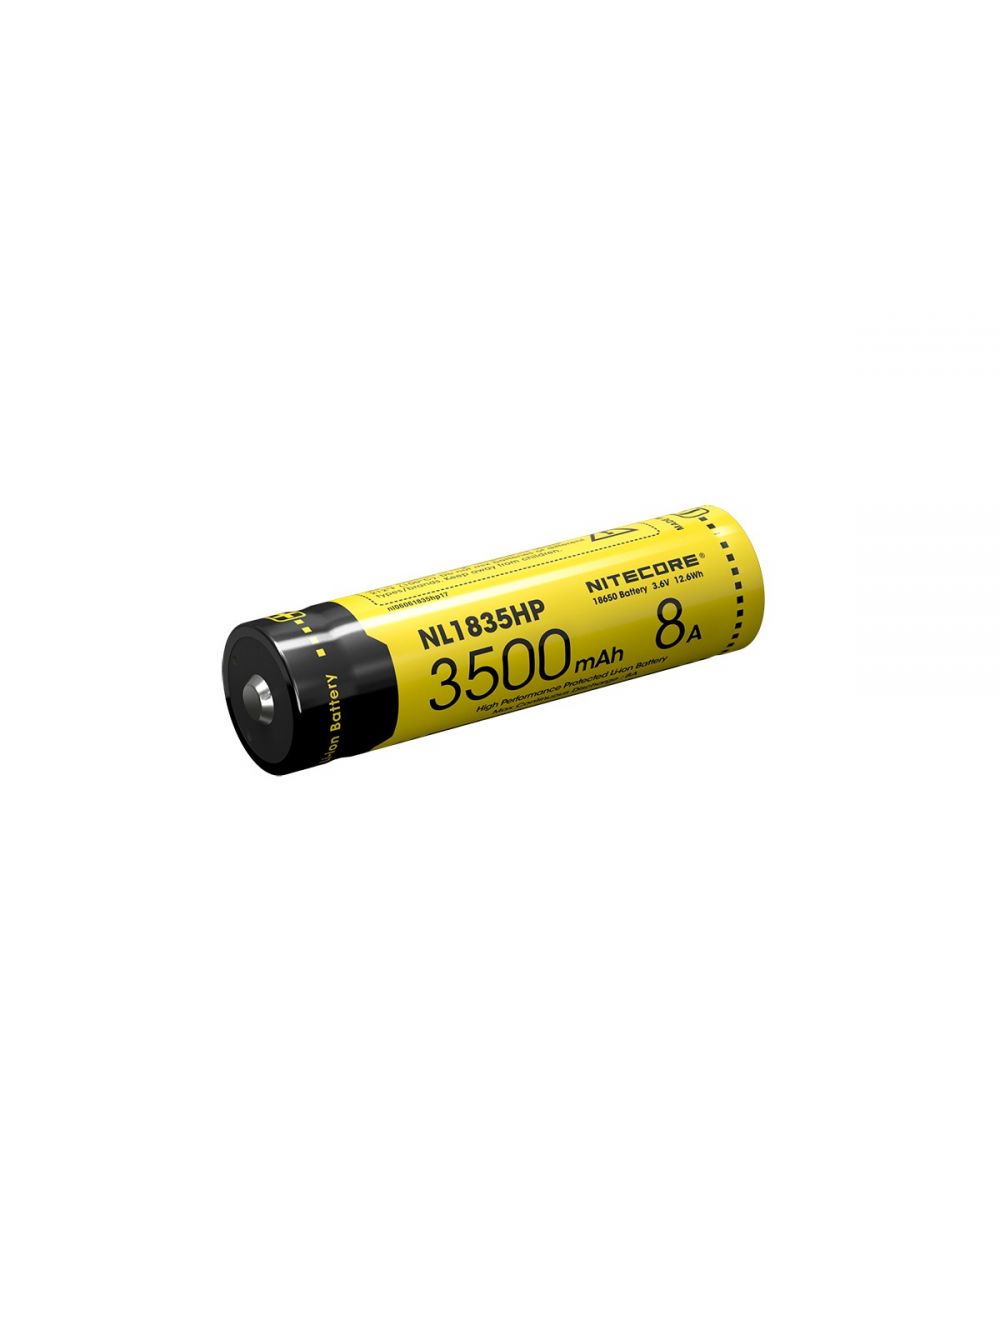 iets Nietje Zachtmoedigheid Nitecore NL1835HP Oplaadbare 18650 Li-Ion batterij 3500mAh kopen?  Ledscherp.nl